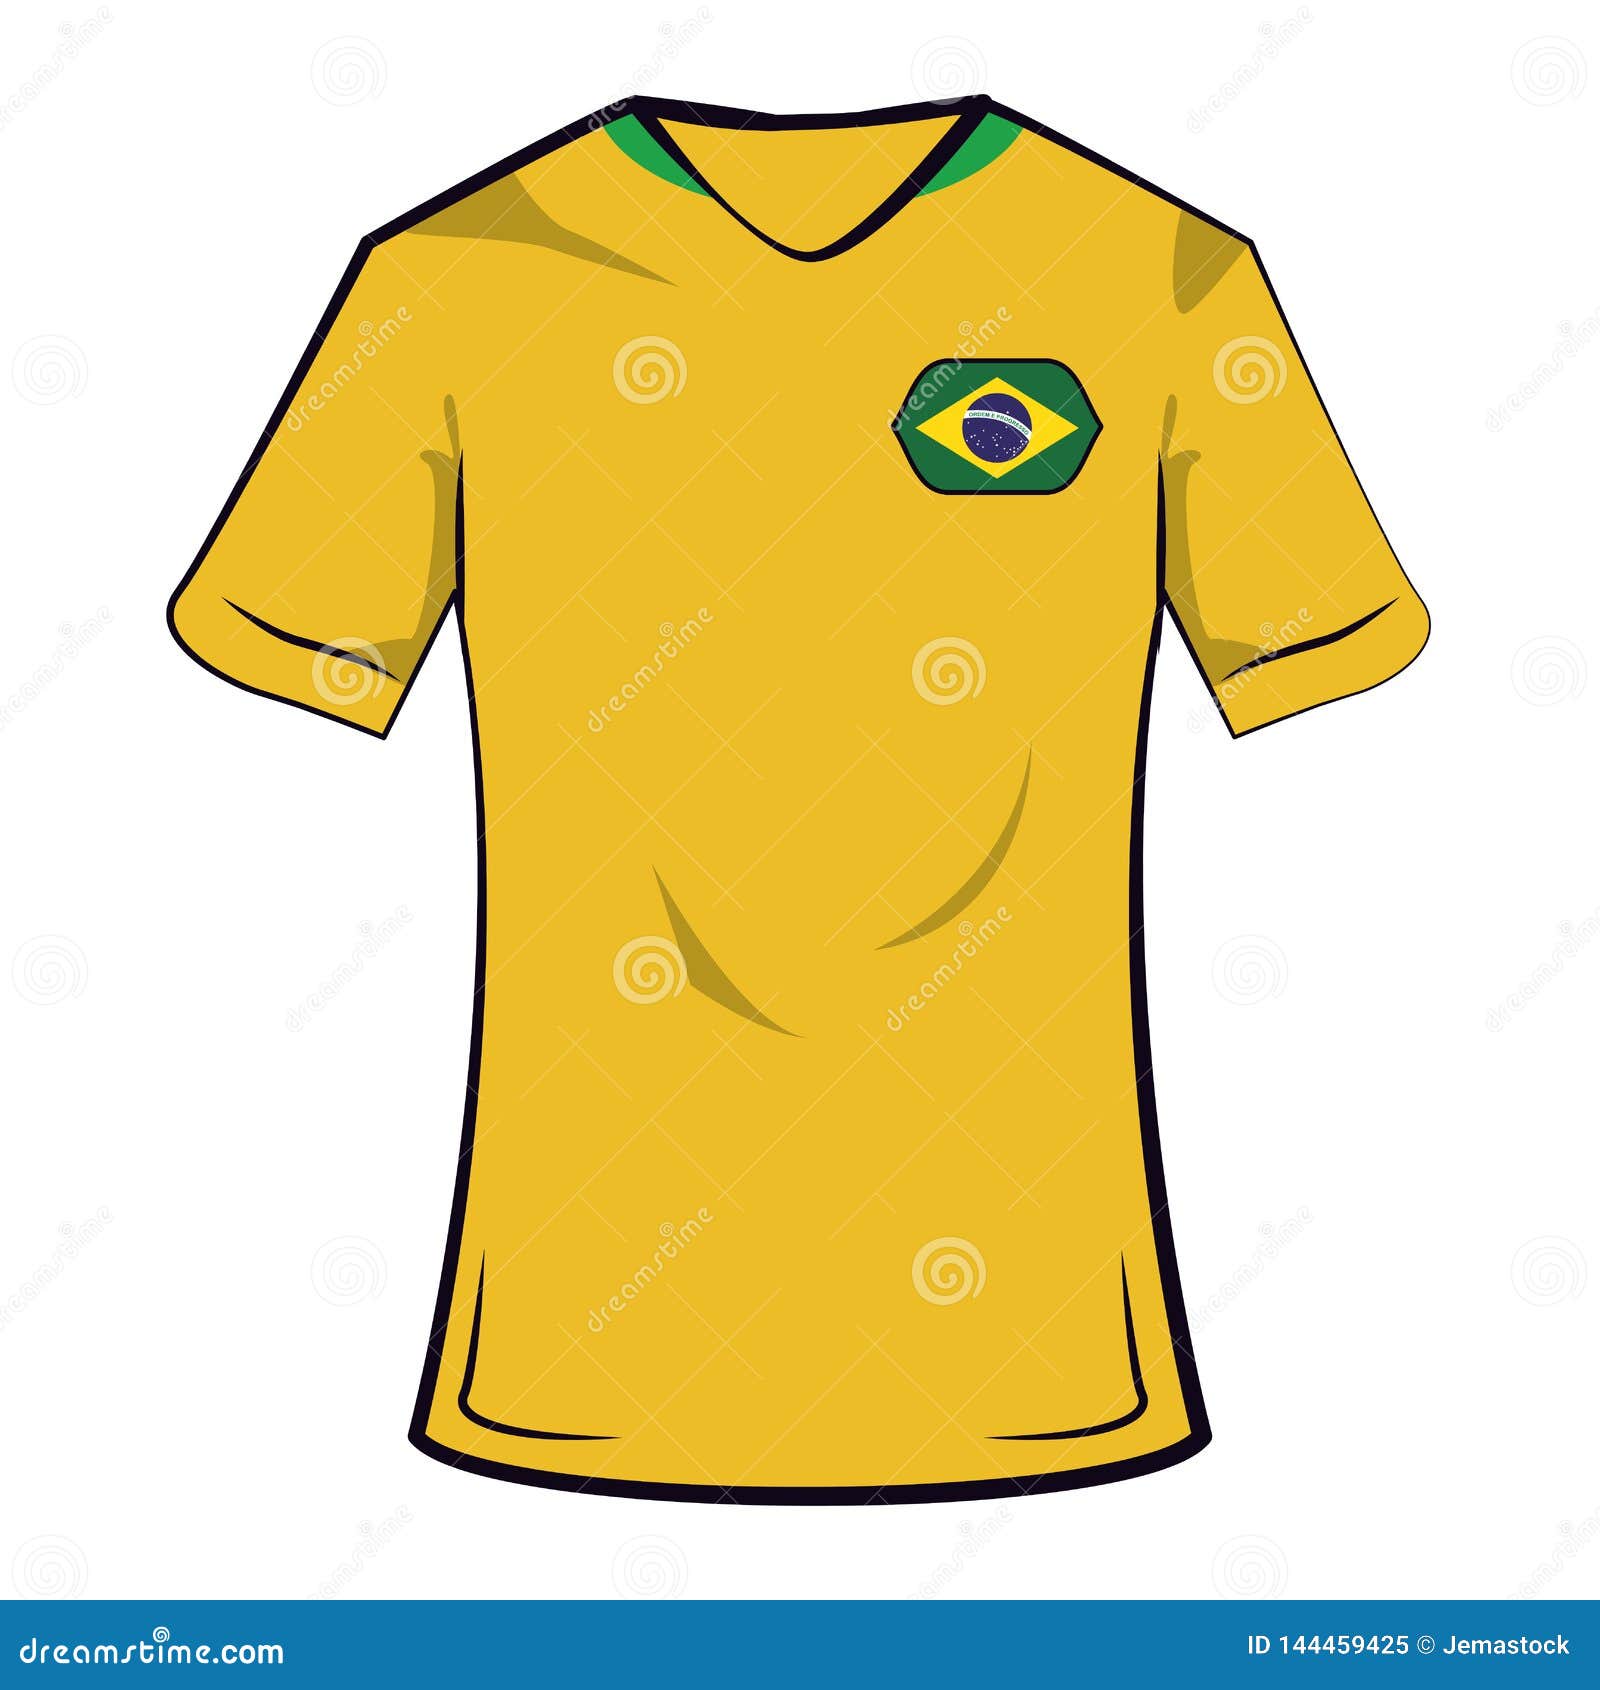 https://thumbs.dreamstime.com/z/camiseta-del-f%C3%BAtbol-brasil-dise%C3%B1o-gr%C3%A1fico-ejemplo-uniforme-vector-de-la-equipo-144459425.jpg